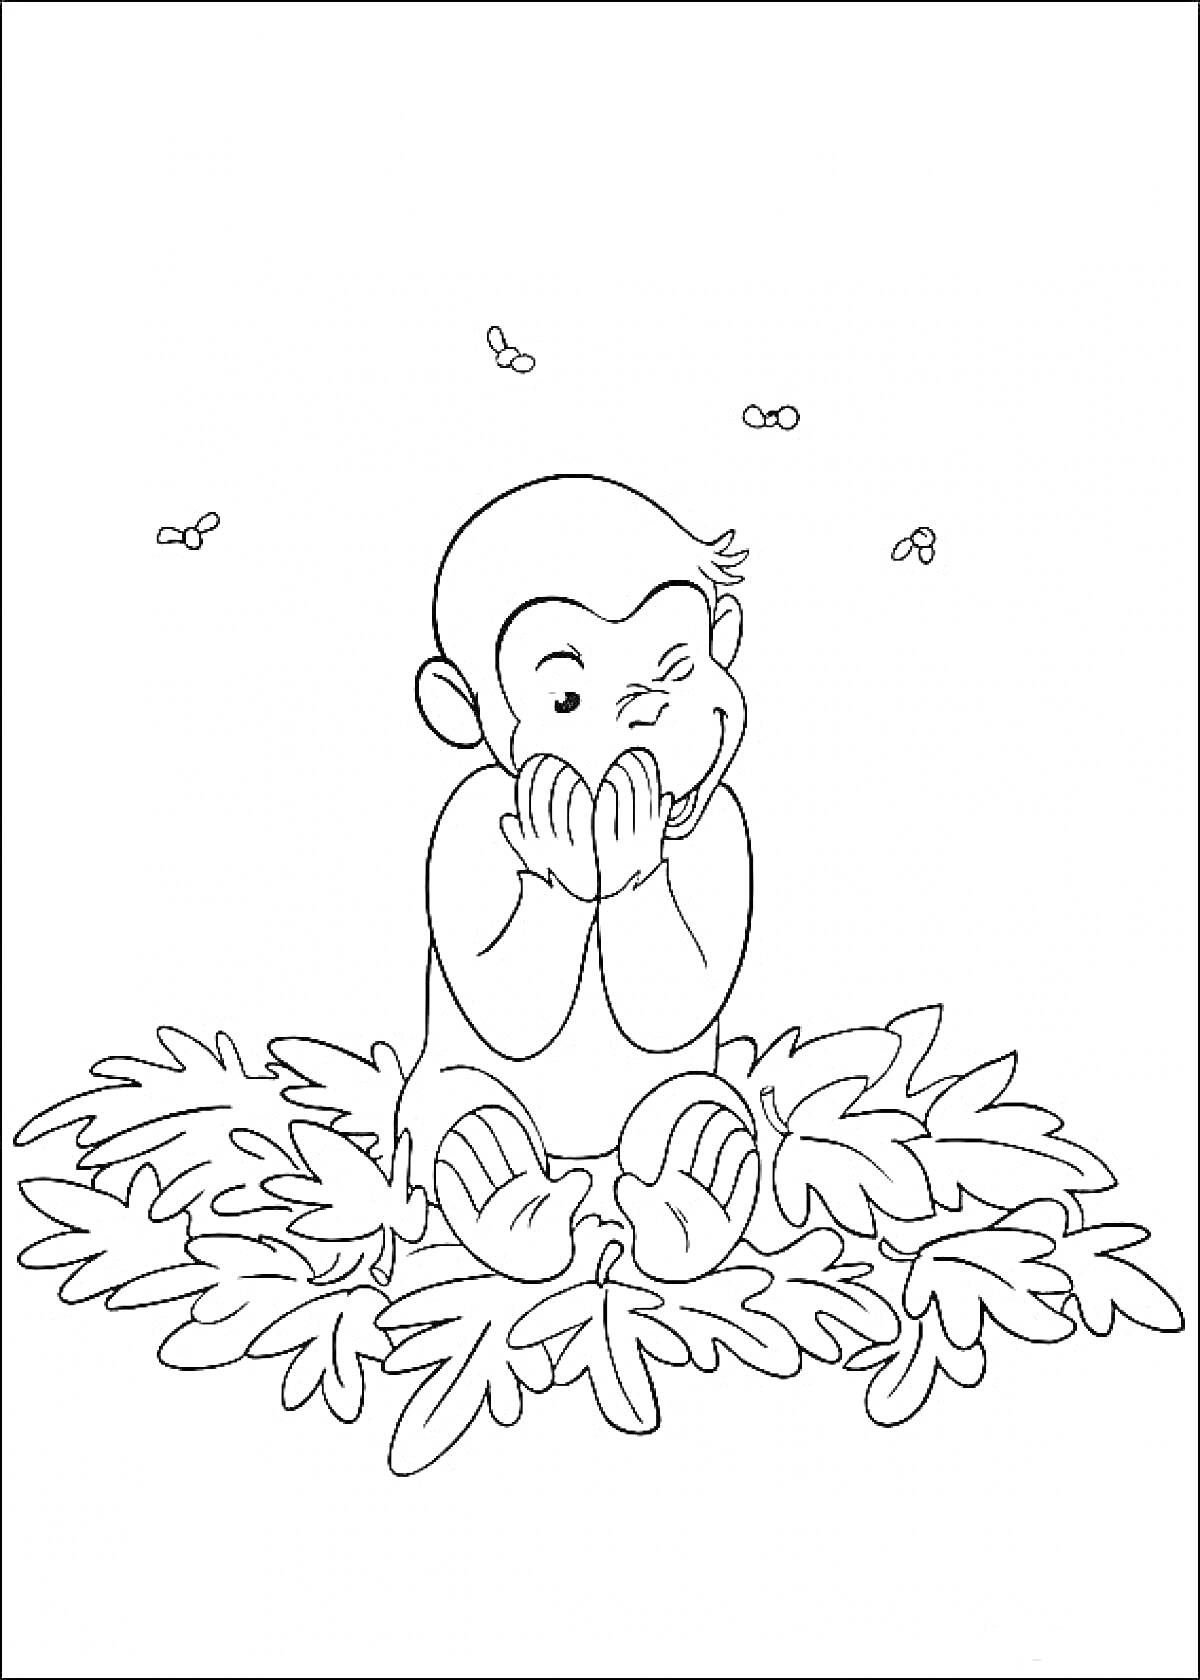 Раскраска Любопытный Джордж сидит на листьях с пчелами вокруг